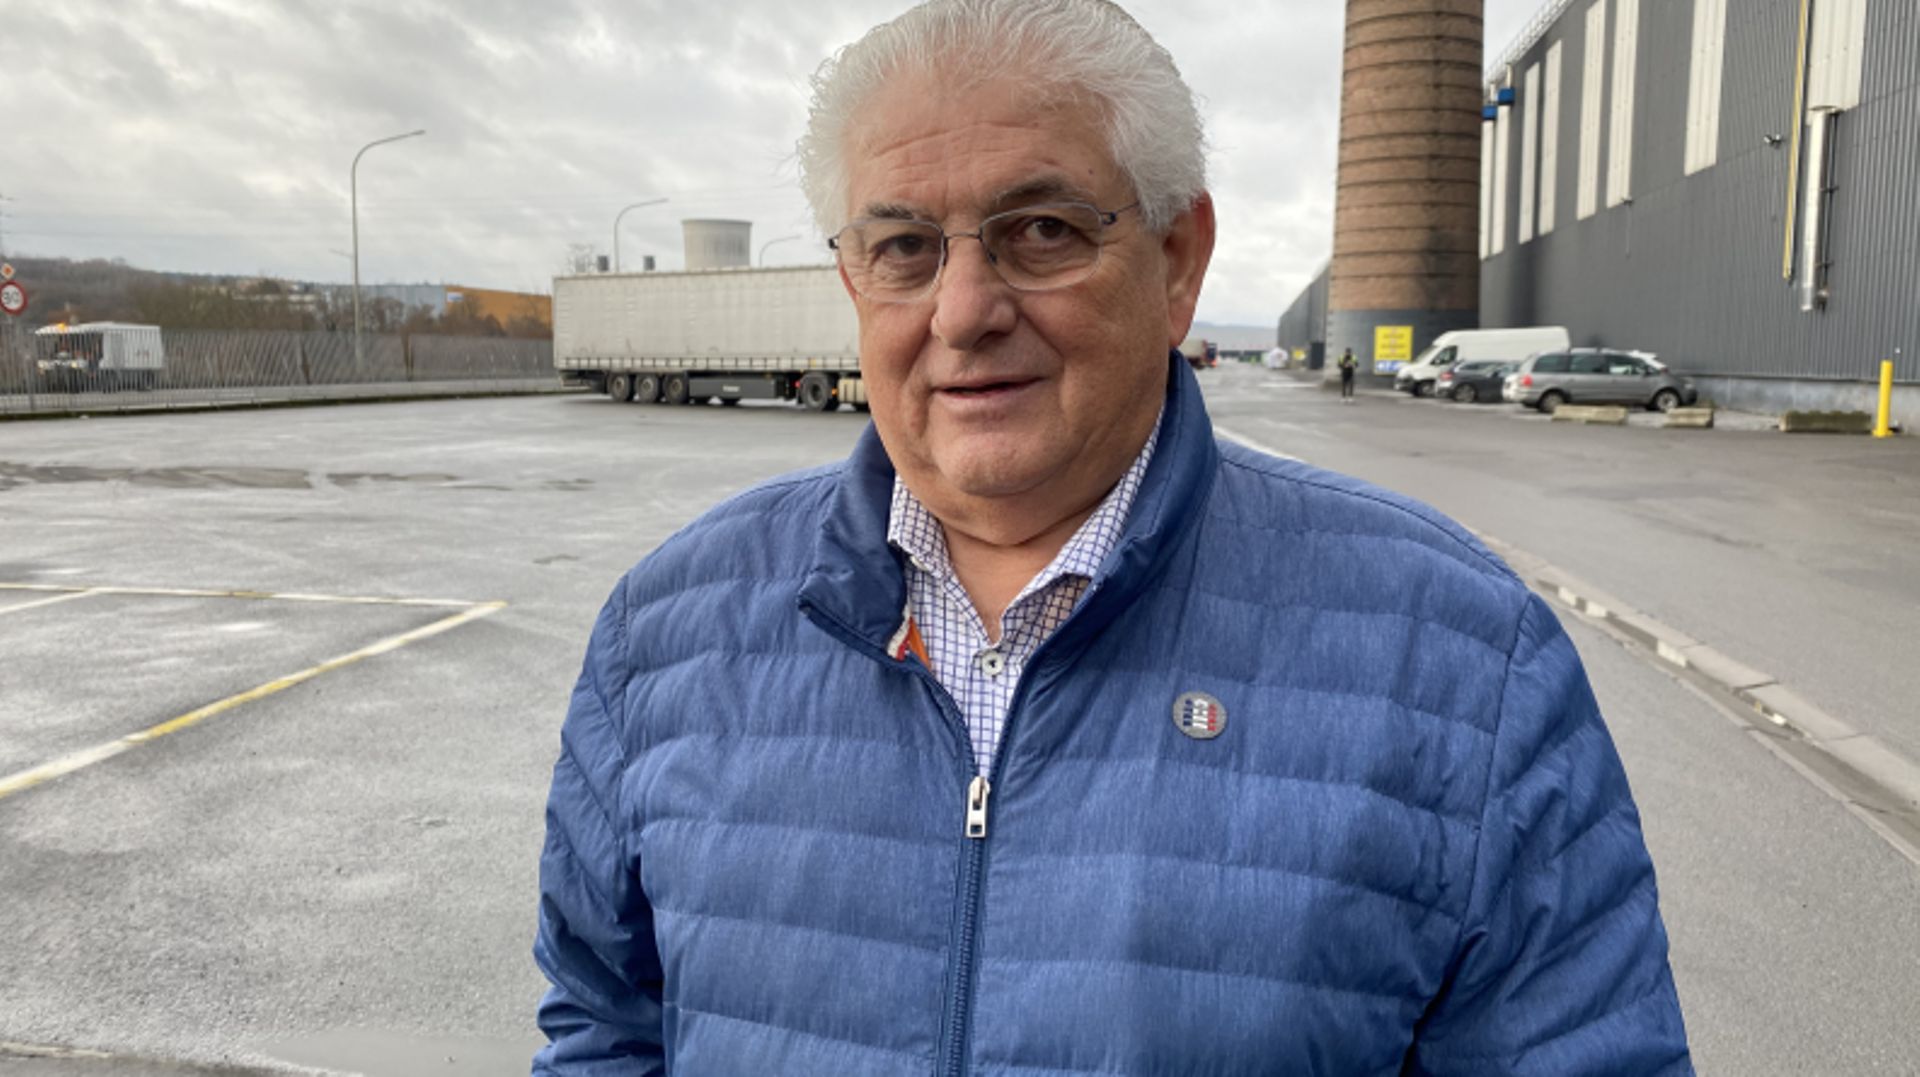 Mario Franchi est transporteur depuis 1976.